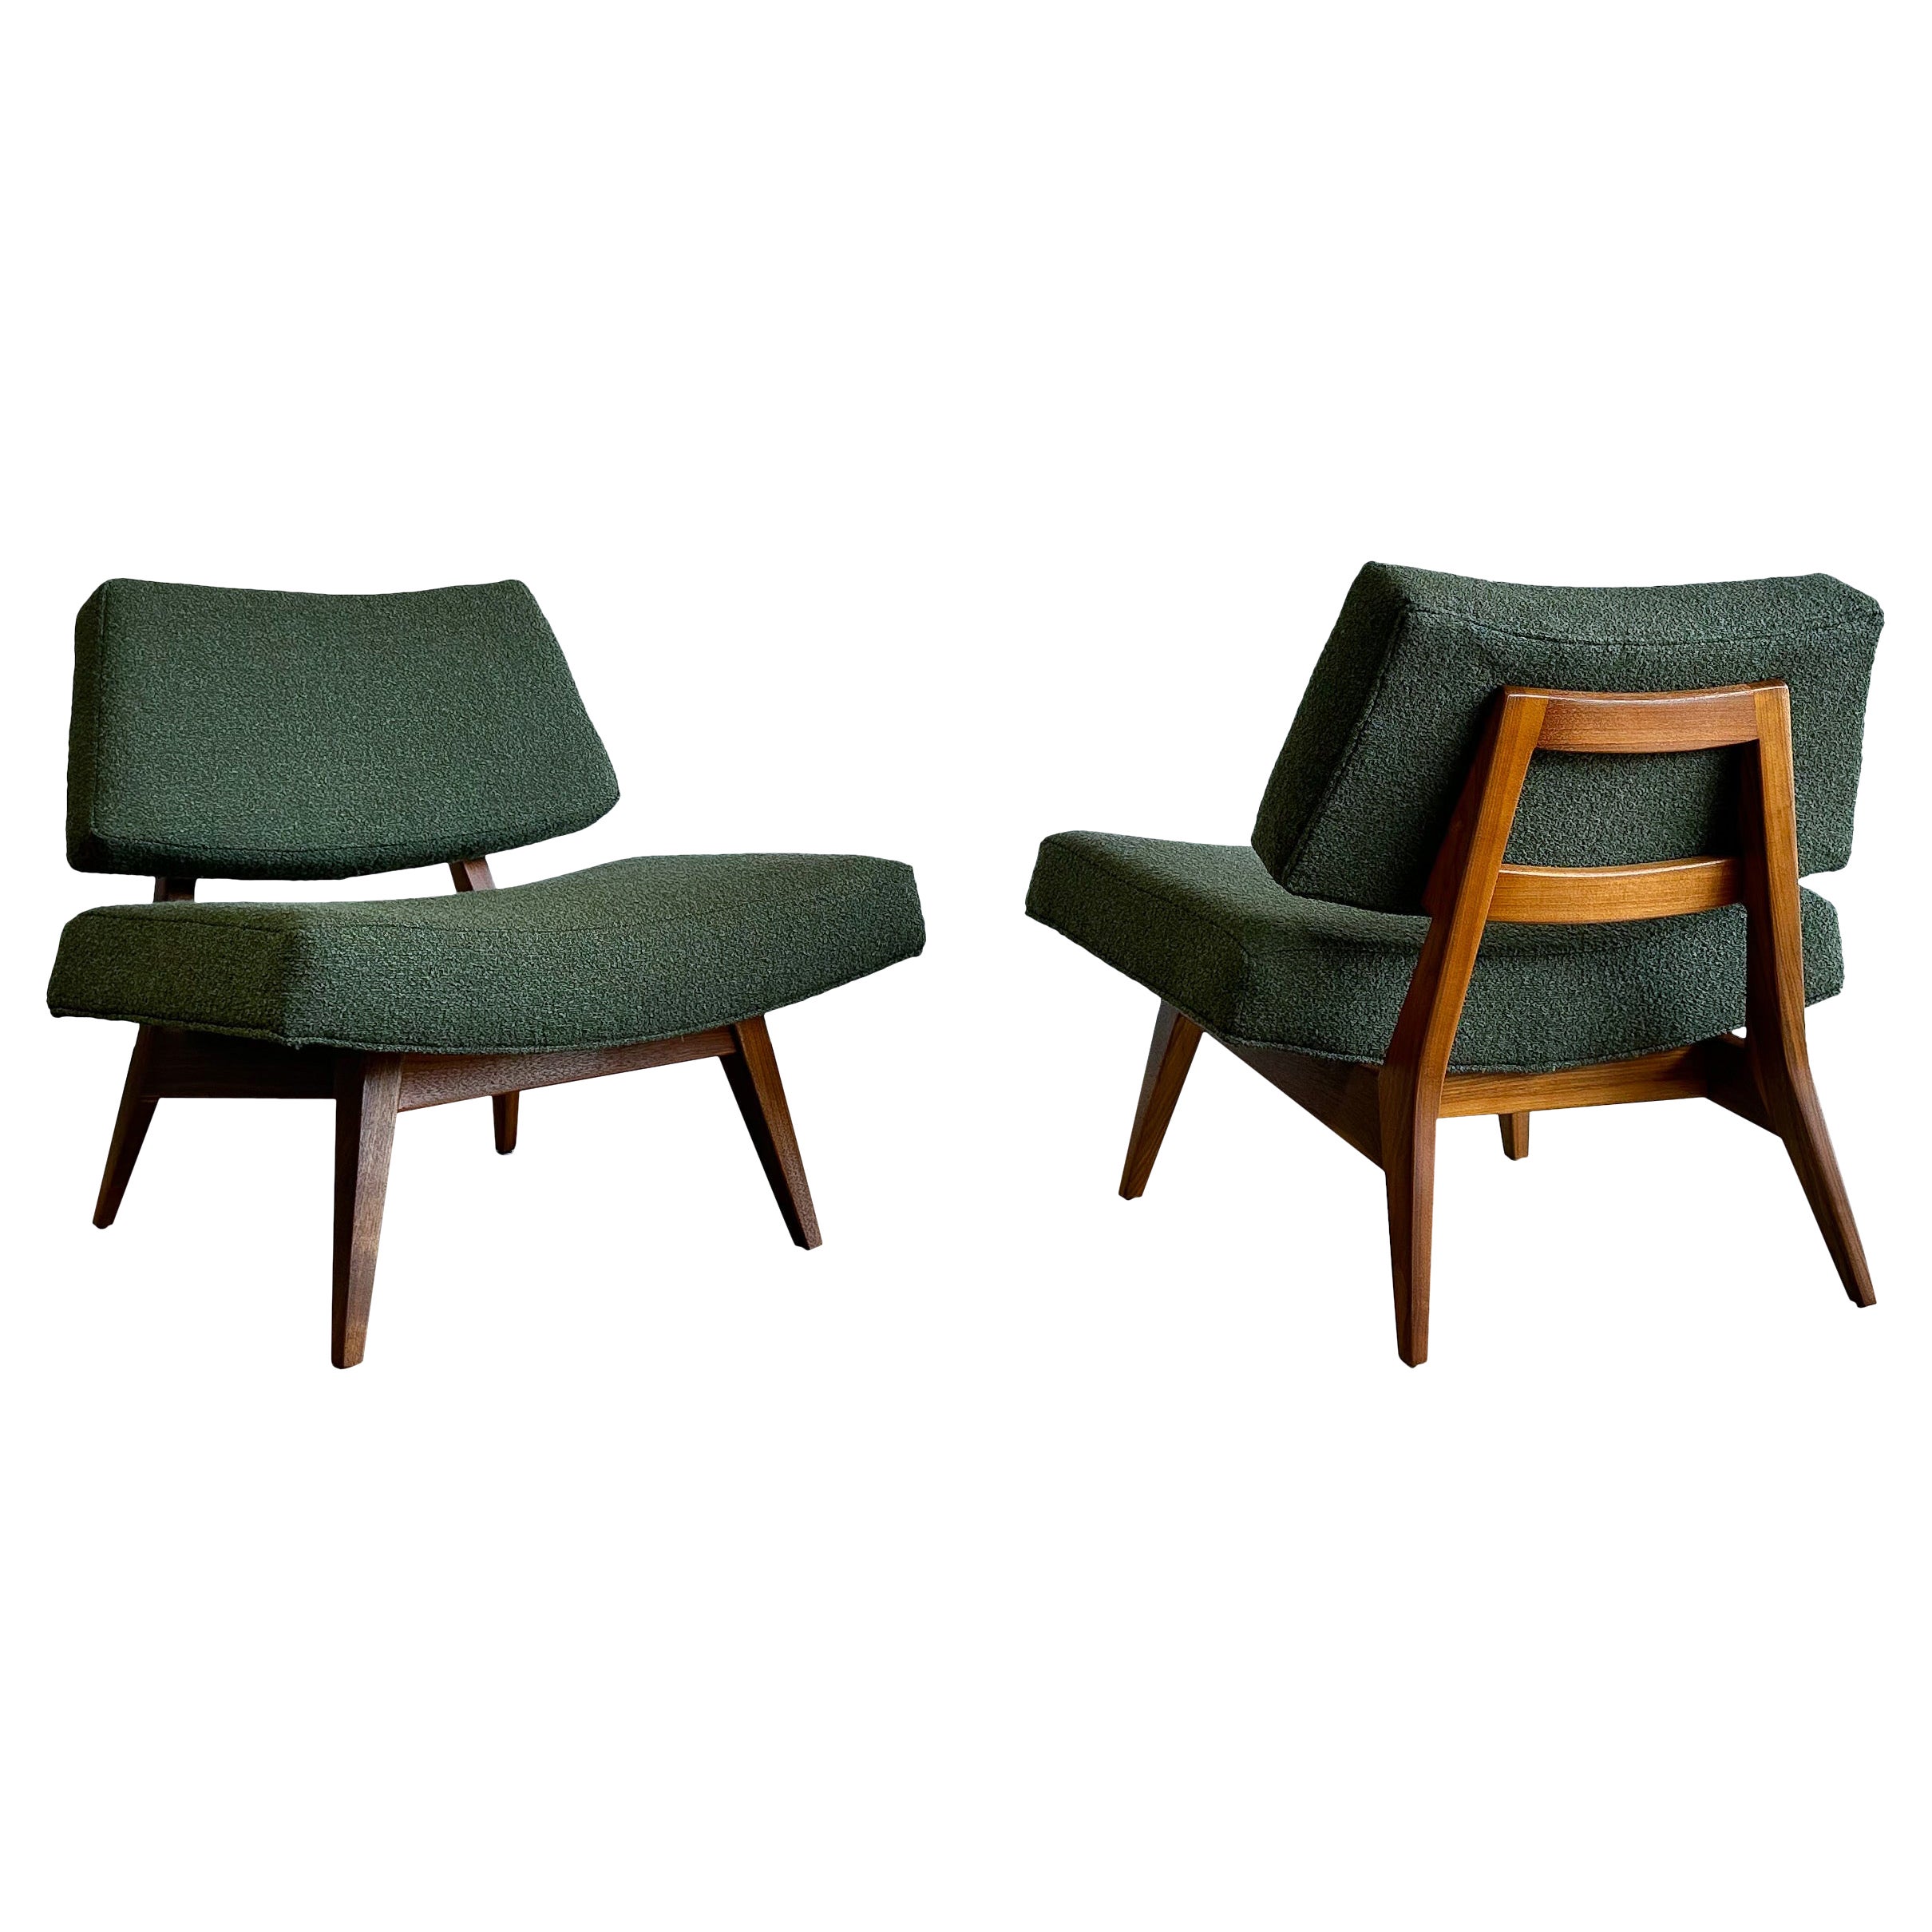 Seltene Jens Risom Lounge Chairs, Modell U-416, Nussbaum und Bouclé, 1950er Jahre